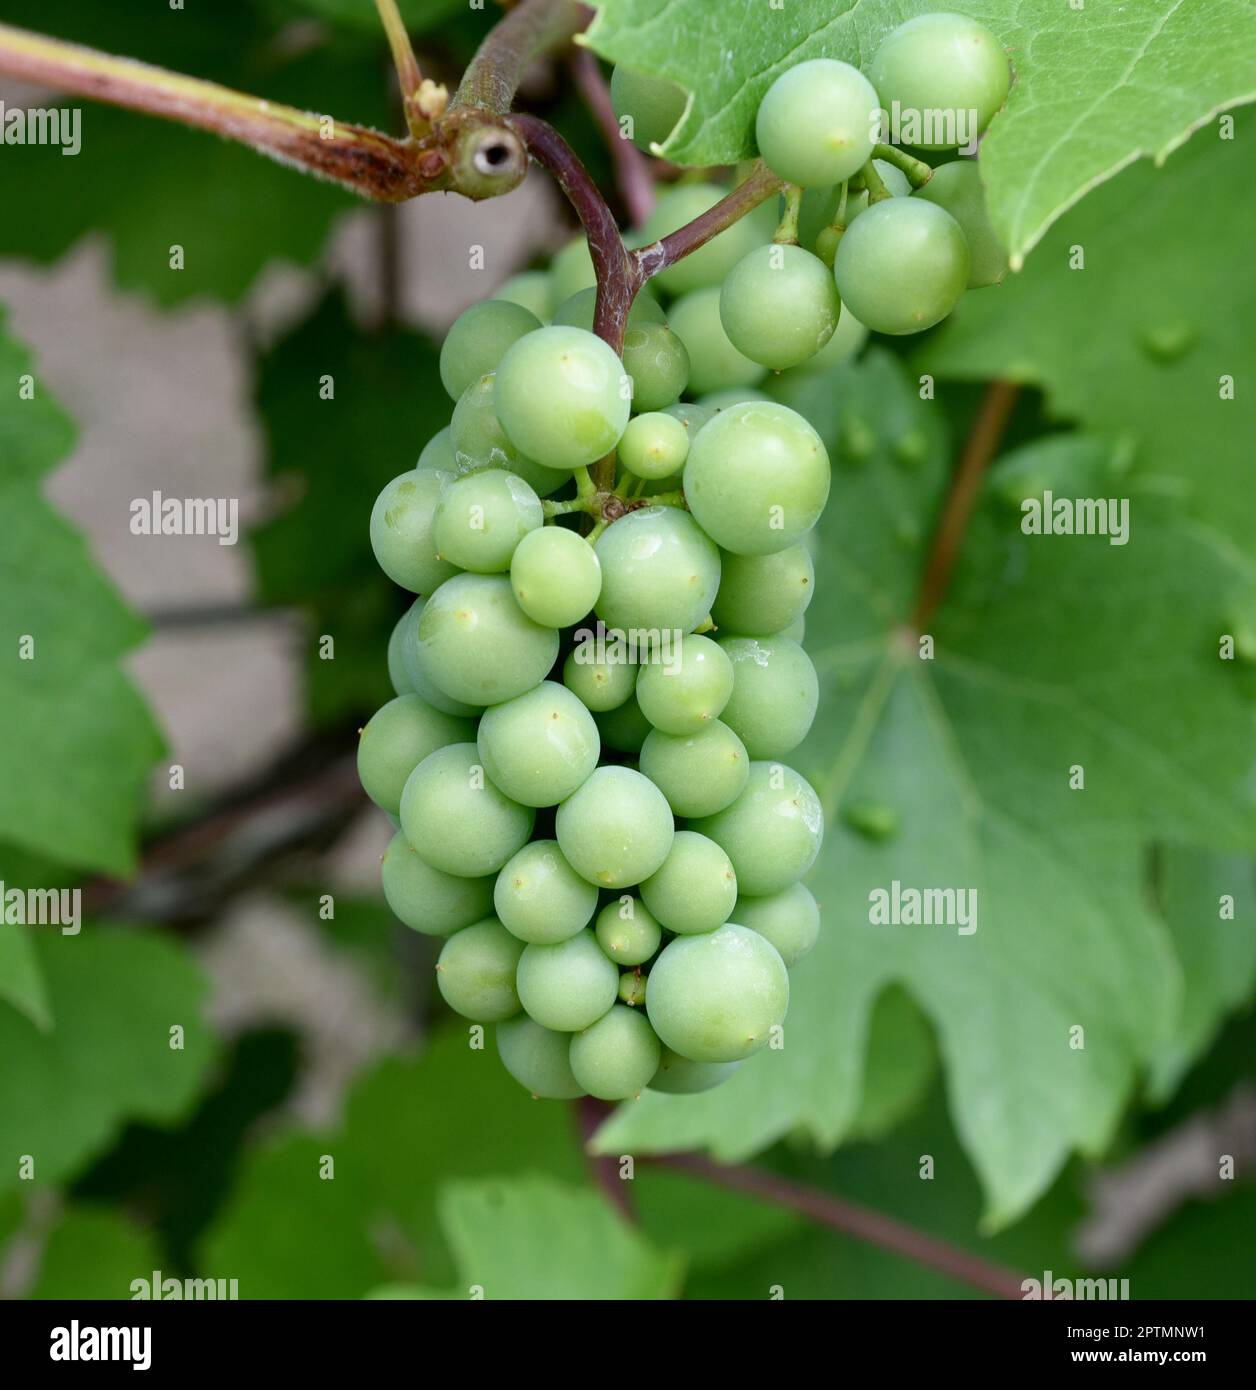 Weissein, Riesling Vitis vinifera, ist ein Wein der hauptsaechlich im Rheingau Hessen angebaut wird. Il vino bianco, Riesling Vitis vinifera, è un vino t Foto Stock